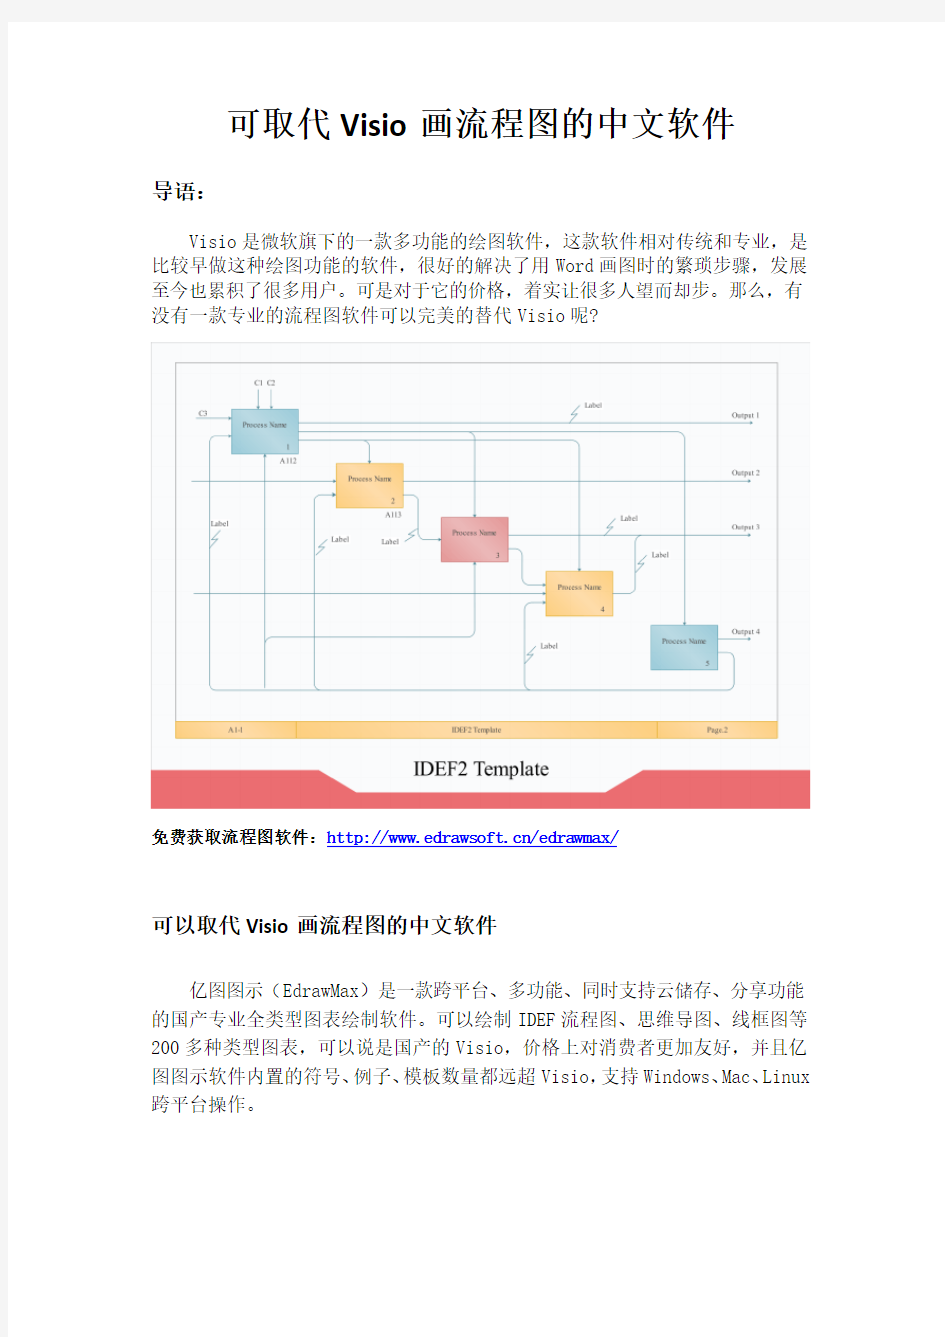 可取代Visio画流程图的中文软件